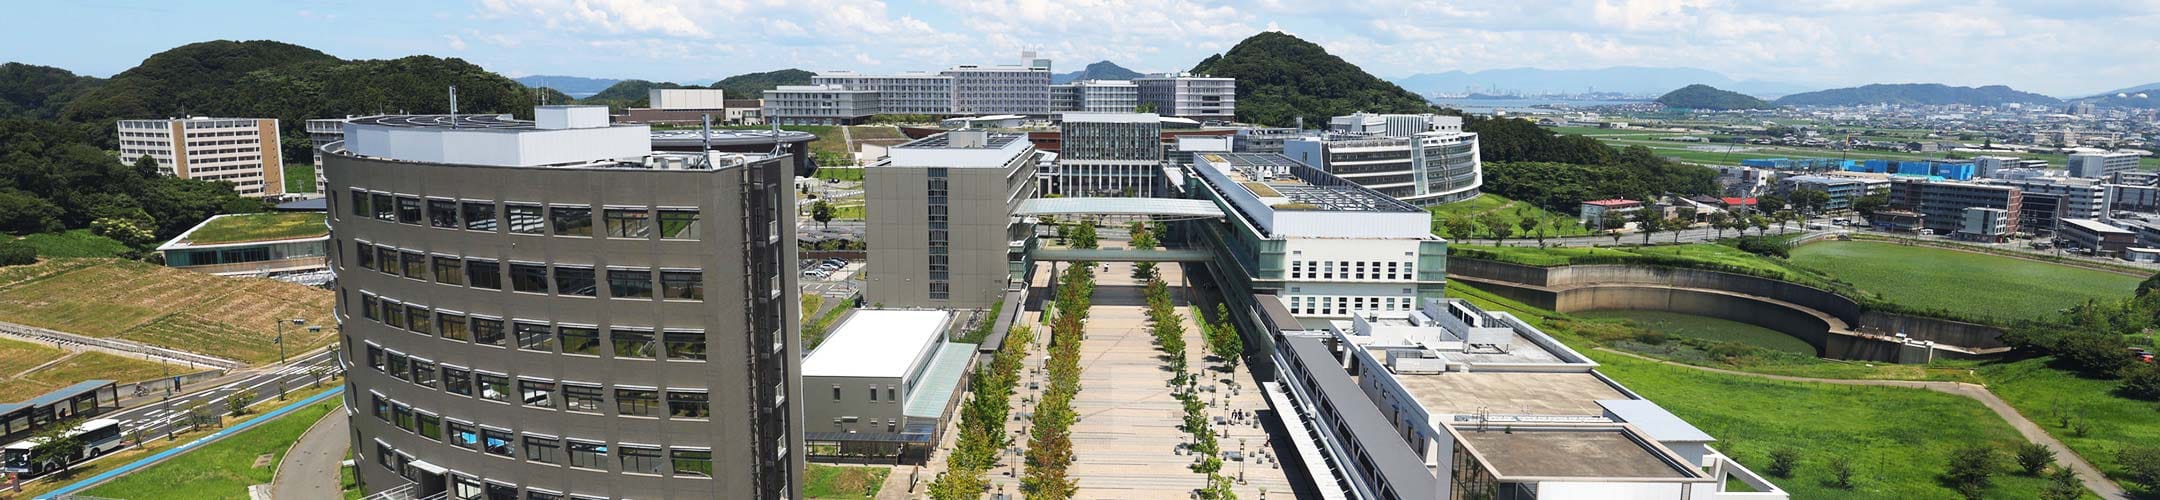 Ito Campus